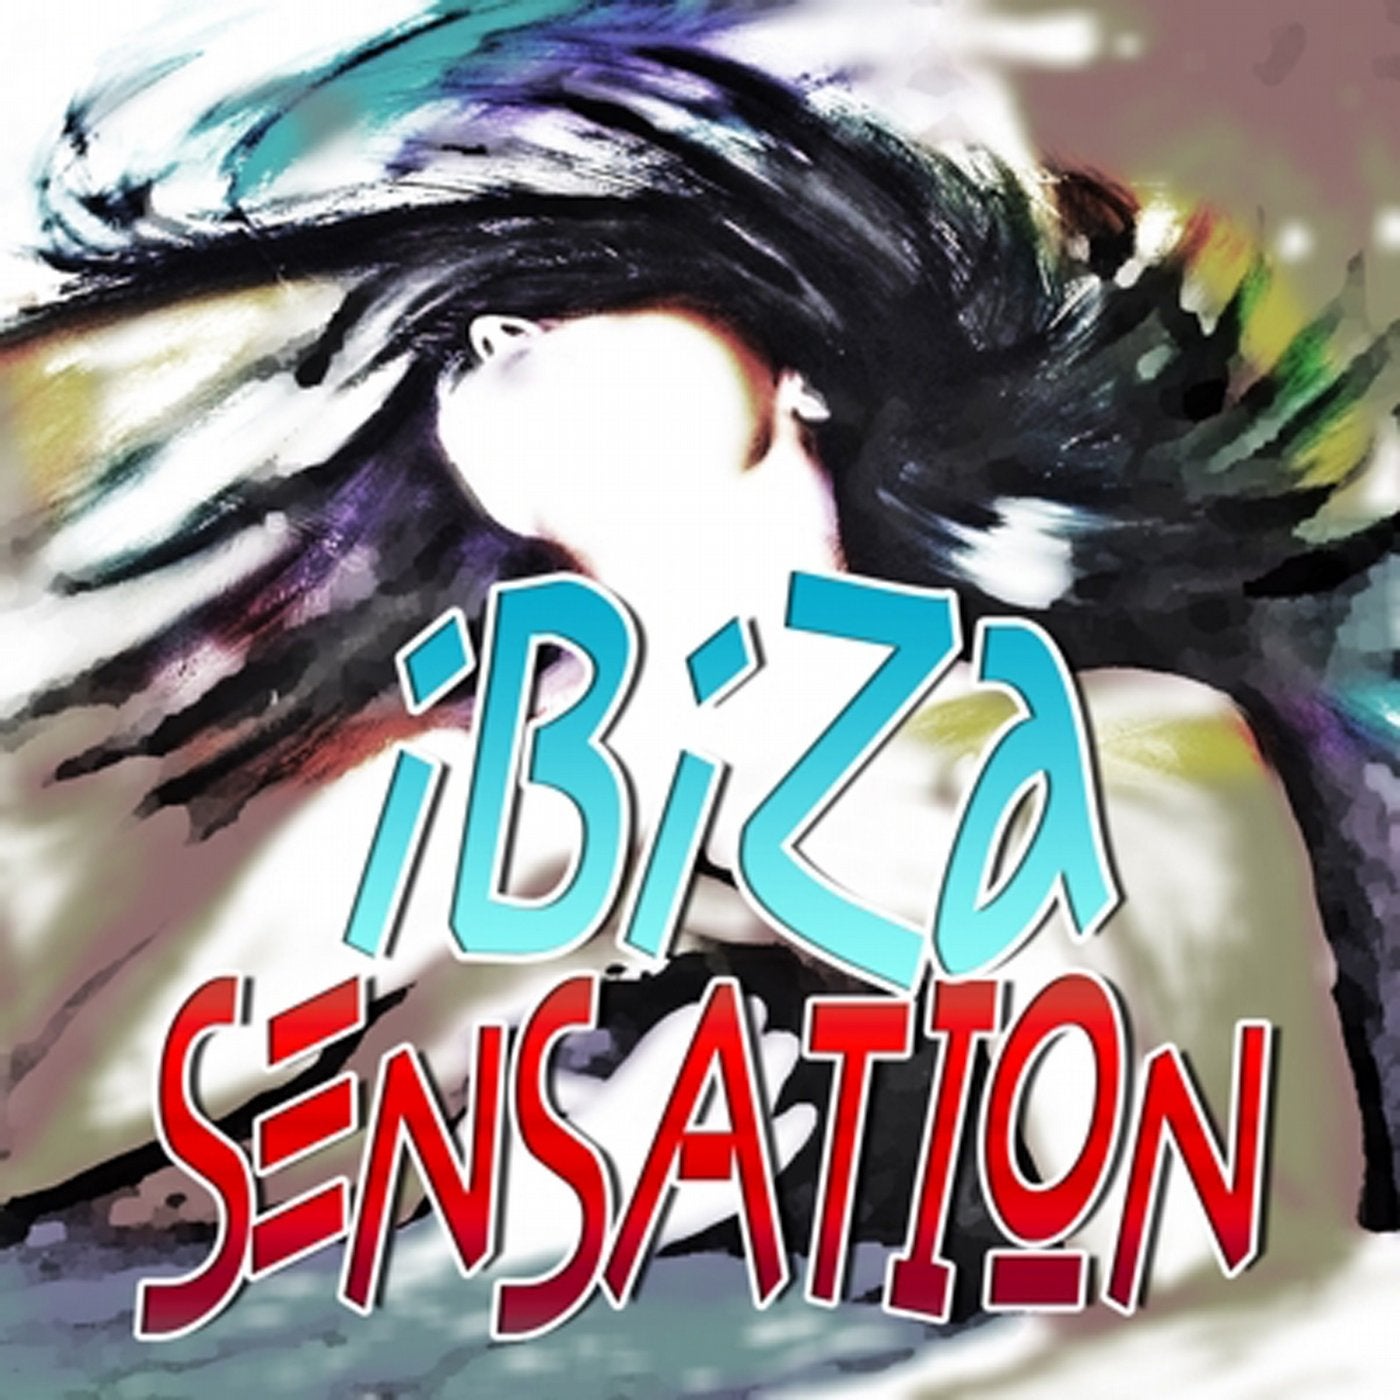 Ibiza Sensation